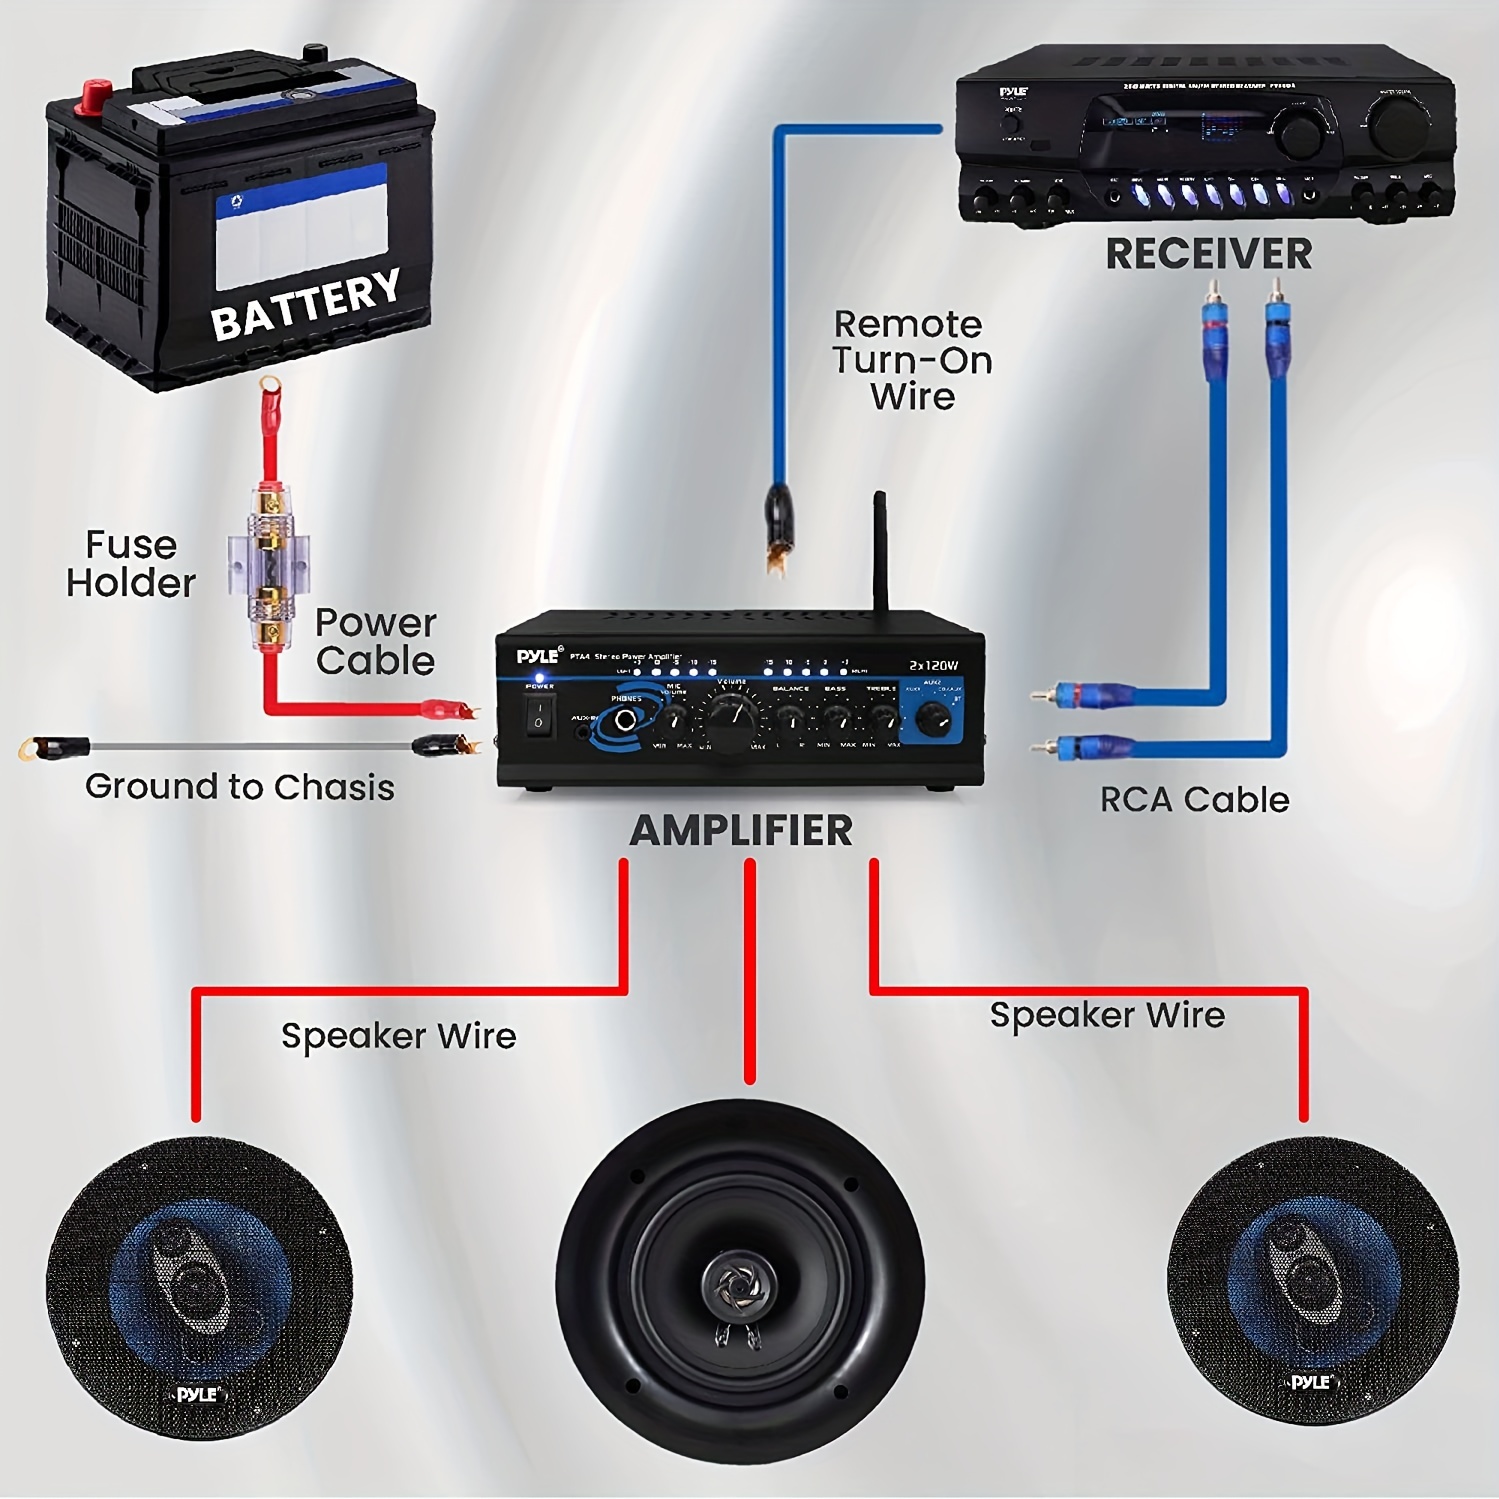 Kit de Cableado para Instalación de Amplificador Coustic CO-KIT8 Calib –  Audioshop México lo mejor en Car Audio en México